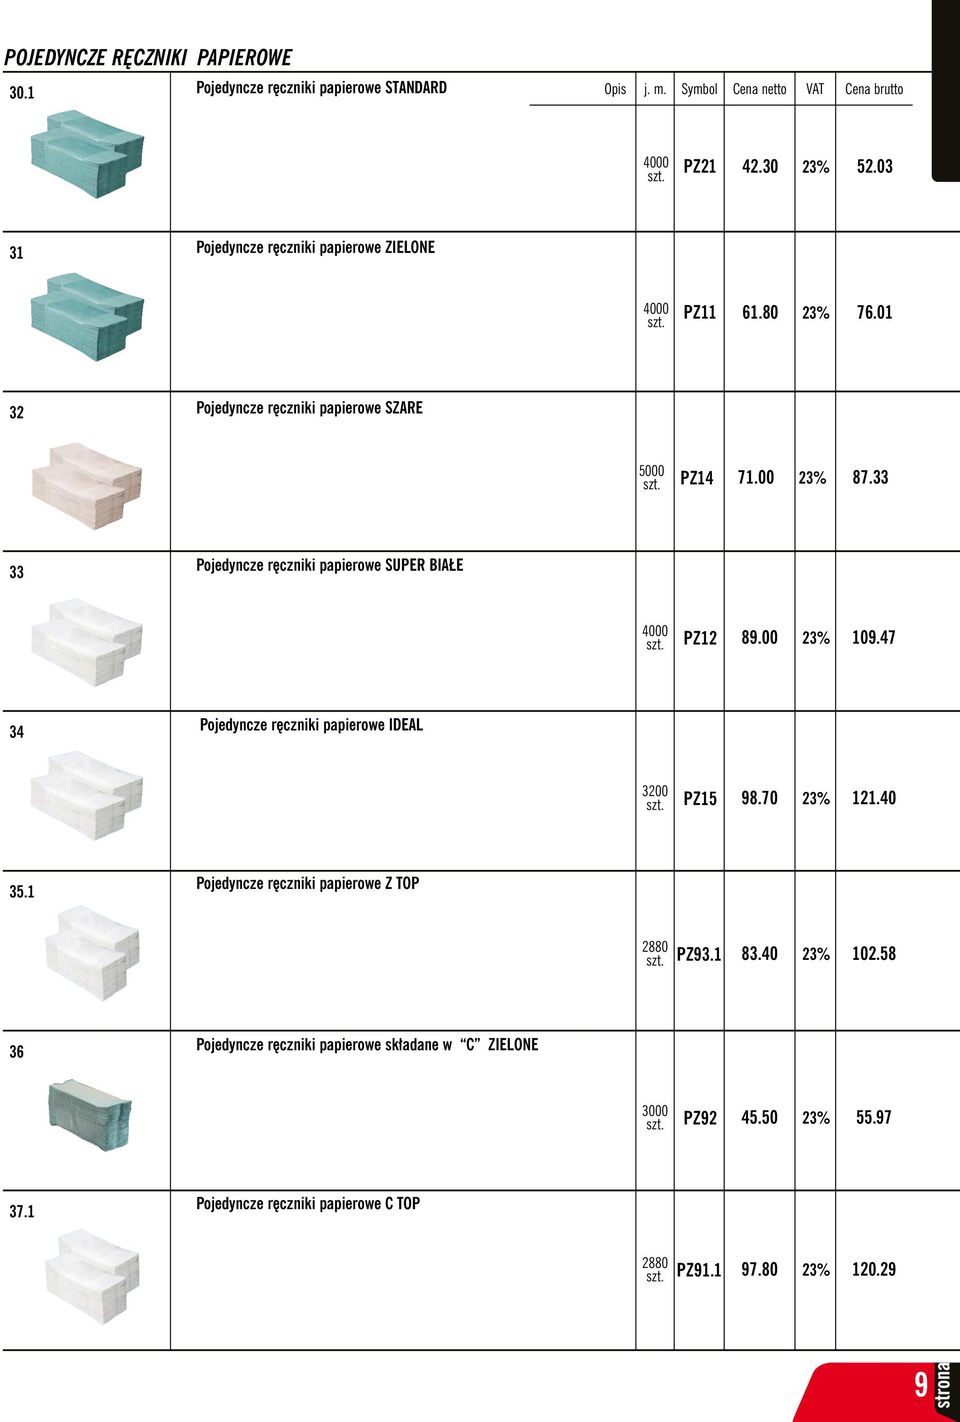 33 33 Pojedyncze ręczniki papierowe SUPER BIAŁE 4000 PZ12 89.00 109.47 34 Pojedyncze ręczniki papierowe IDEAL 3200 PZ15 98.70 121.40 35.